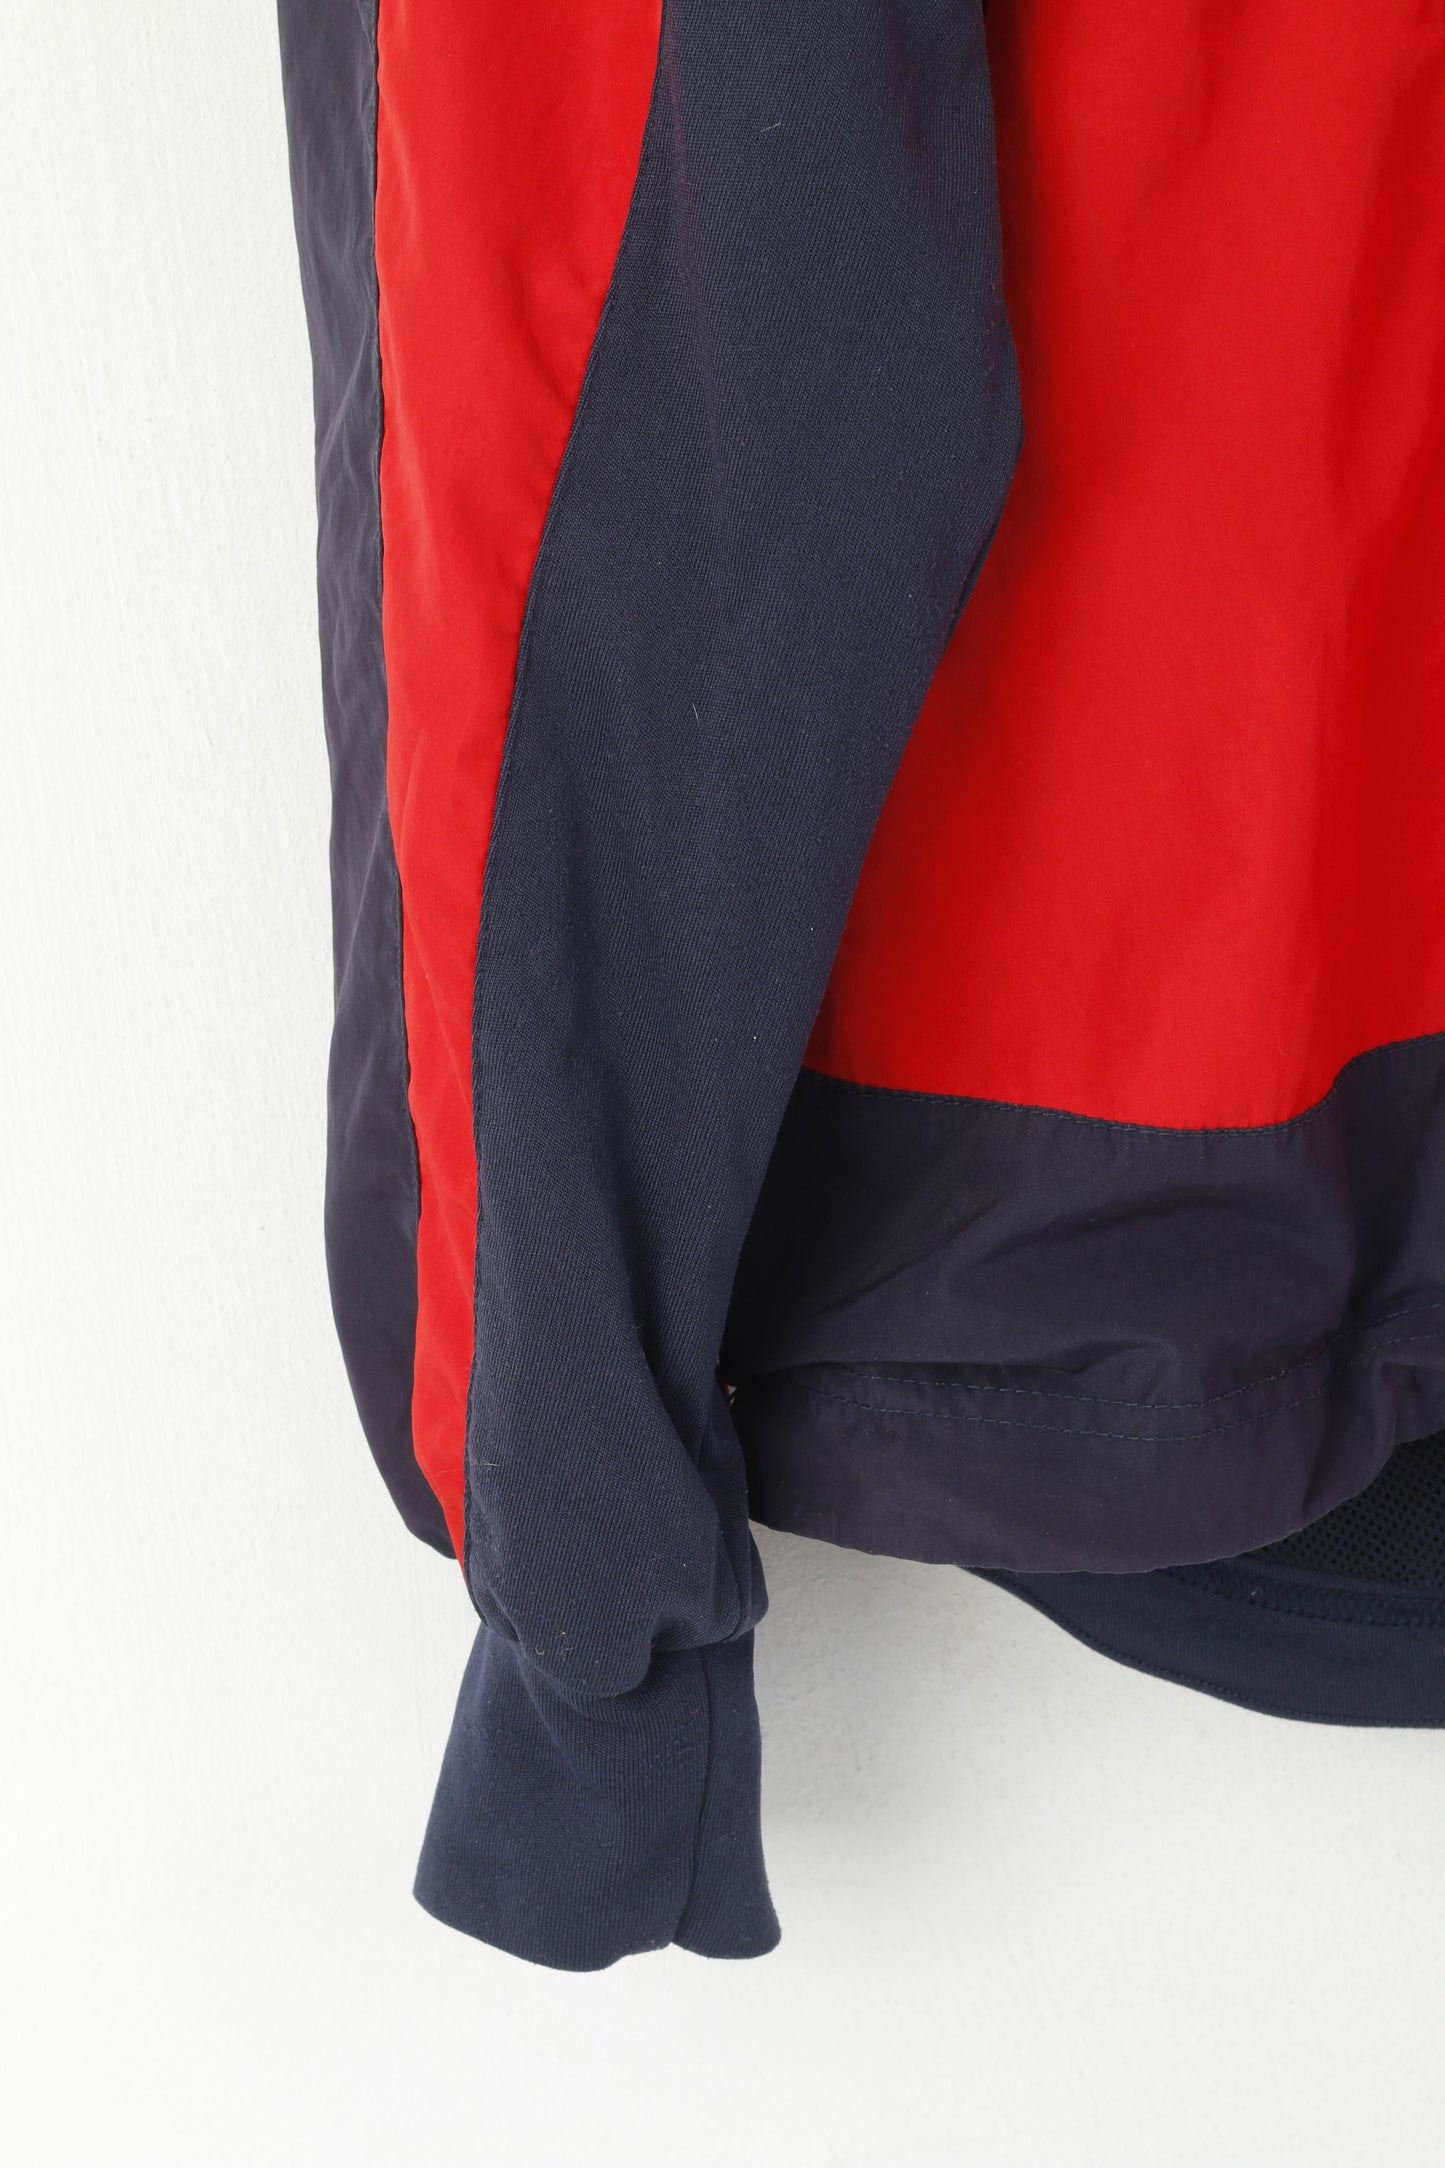 Odlo Bjorn Daehlie Men XL Jacket Red Activewear Full Zip Technical Wear Sport Top